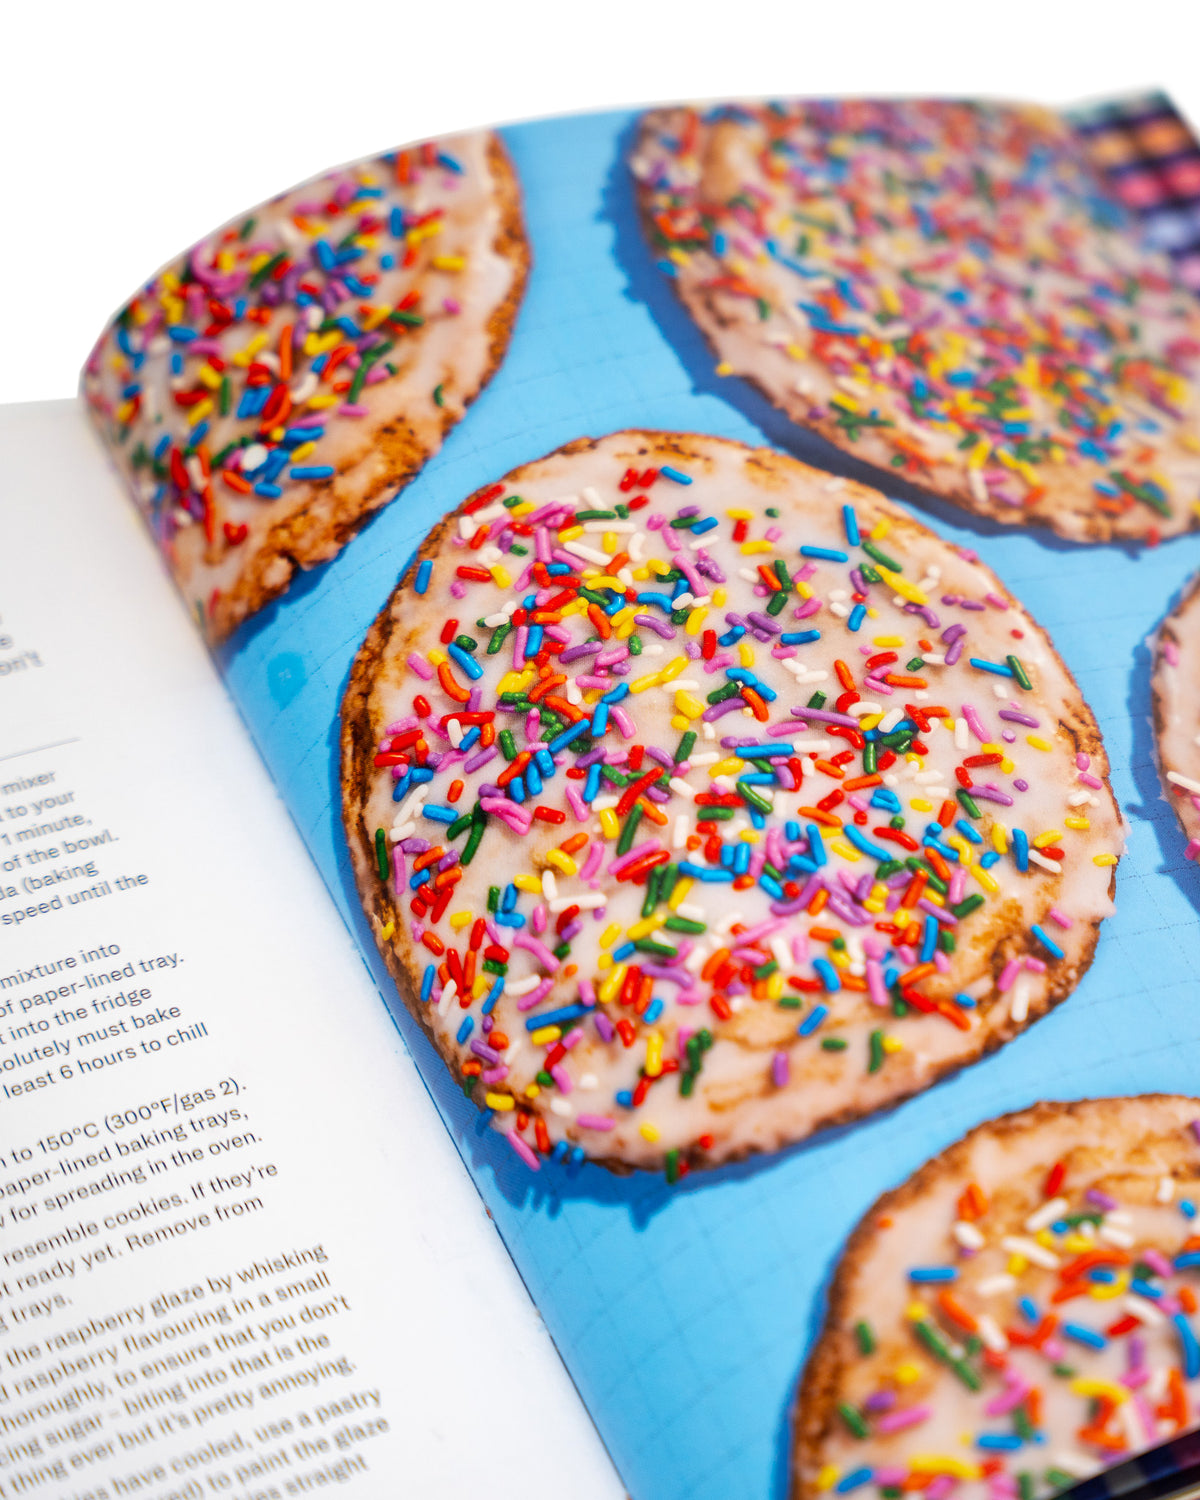 Get Baked: Sensational Cakes, Bakes & Desserts